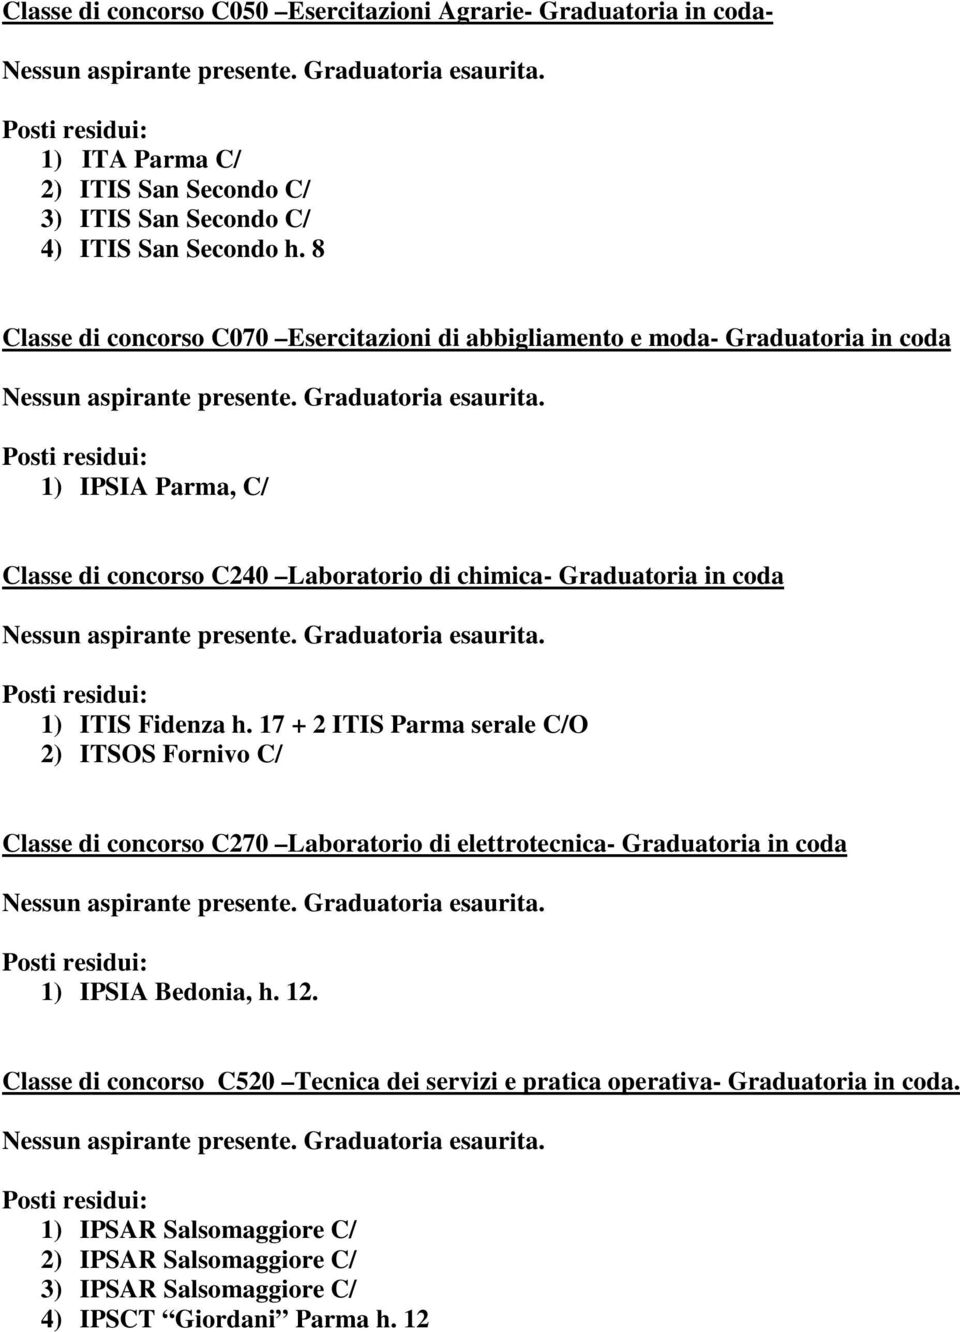 1) ITIS Fidenza h. 17 + 2 ITIS Parma serale C/O 2) ITSOS Fornivo C/ Classe di concorso C270 Laboratorio di elettrotecnica- Graduatoria in coda 1) IPSIA Bedonia, h. 12.